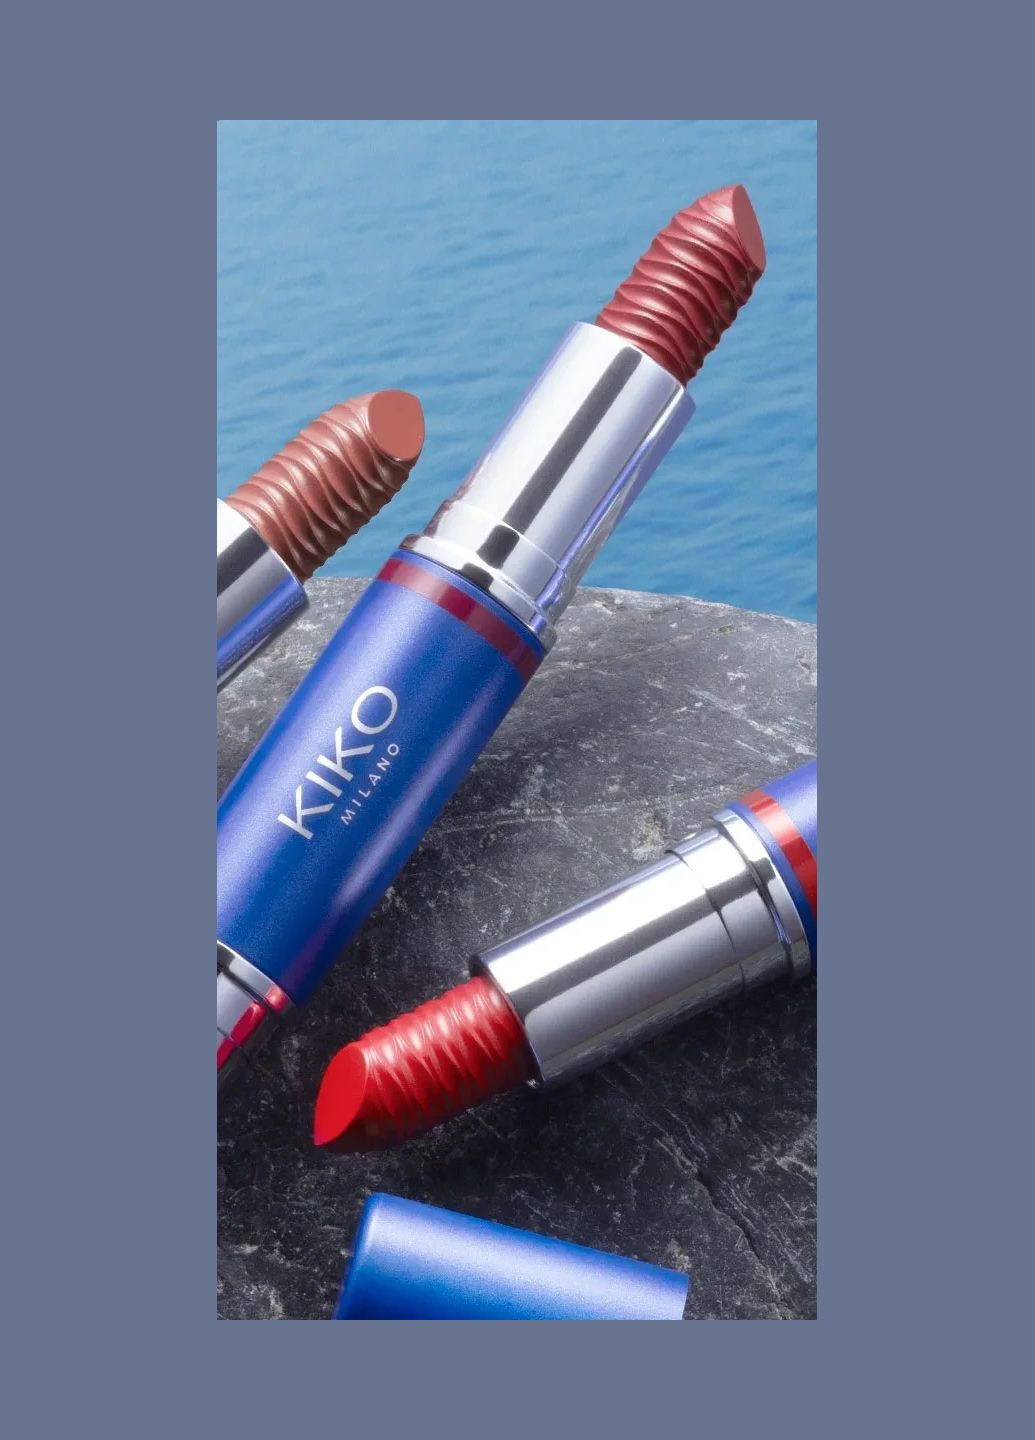 Помада 2в-1 Blue Me 3d Effect Lipstick Duo 02 Помада Duo 02 Kiko Milano (283661476)